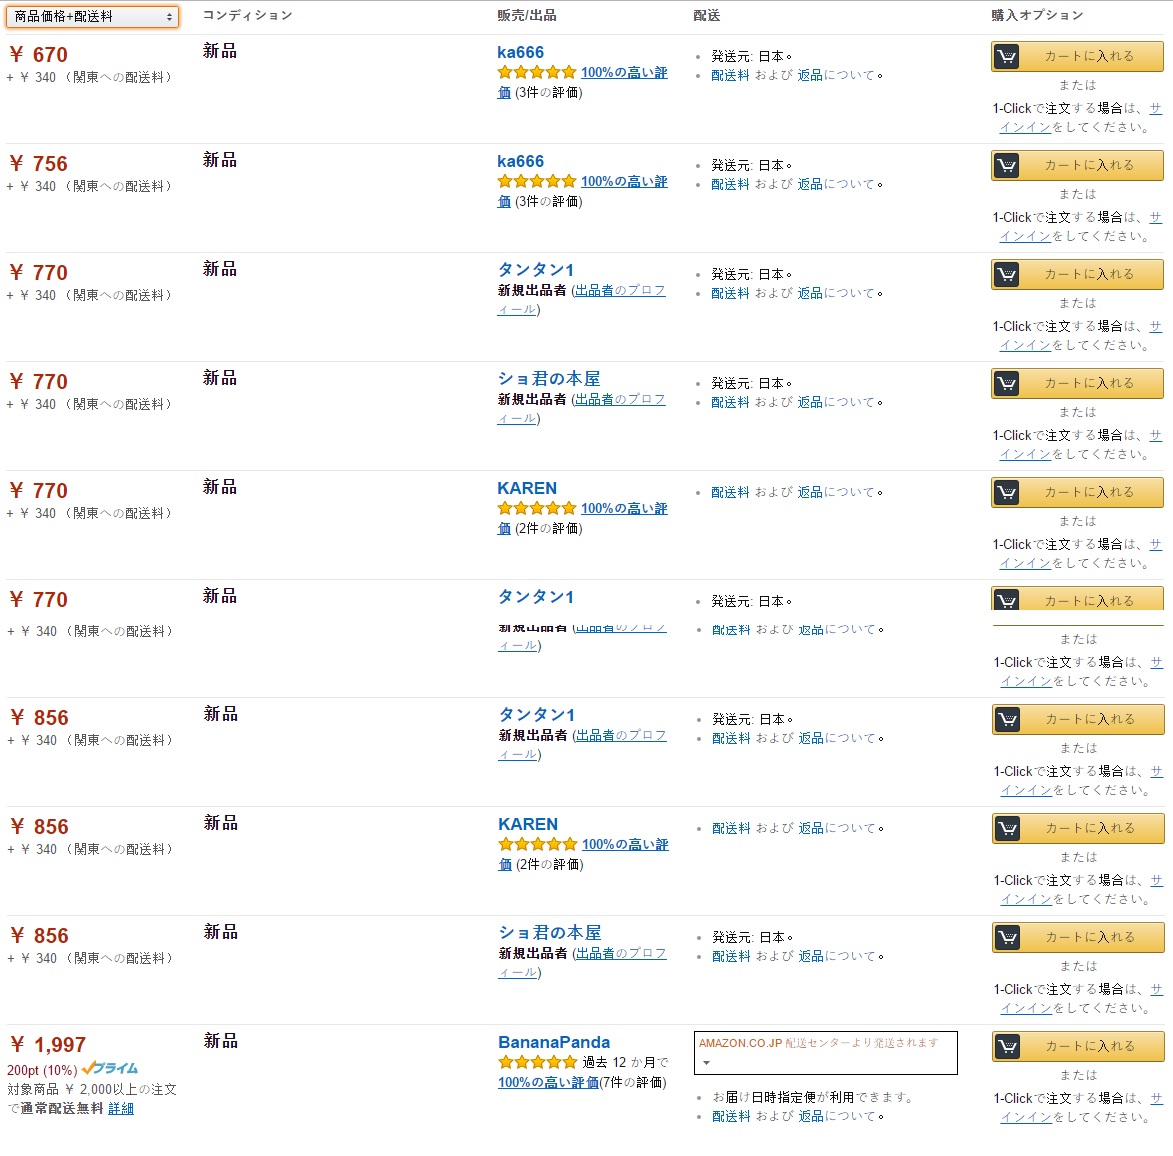 Multiple sellers on Amazon Japan Listing